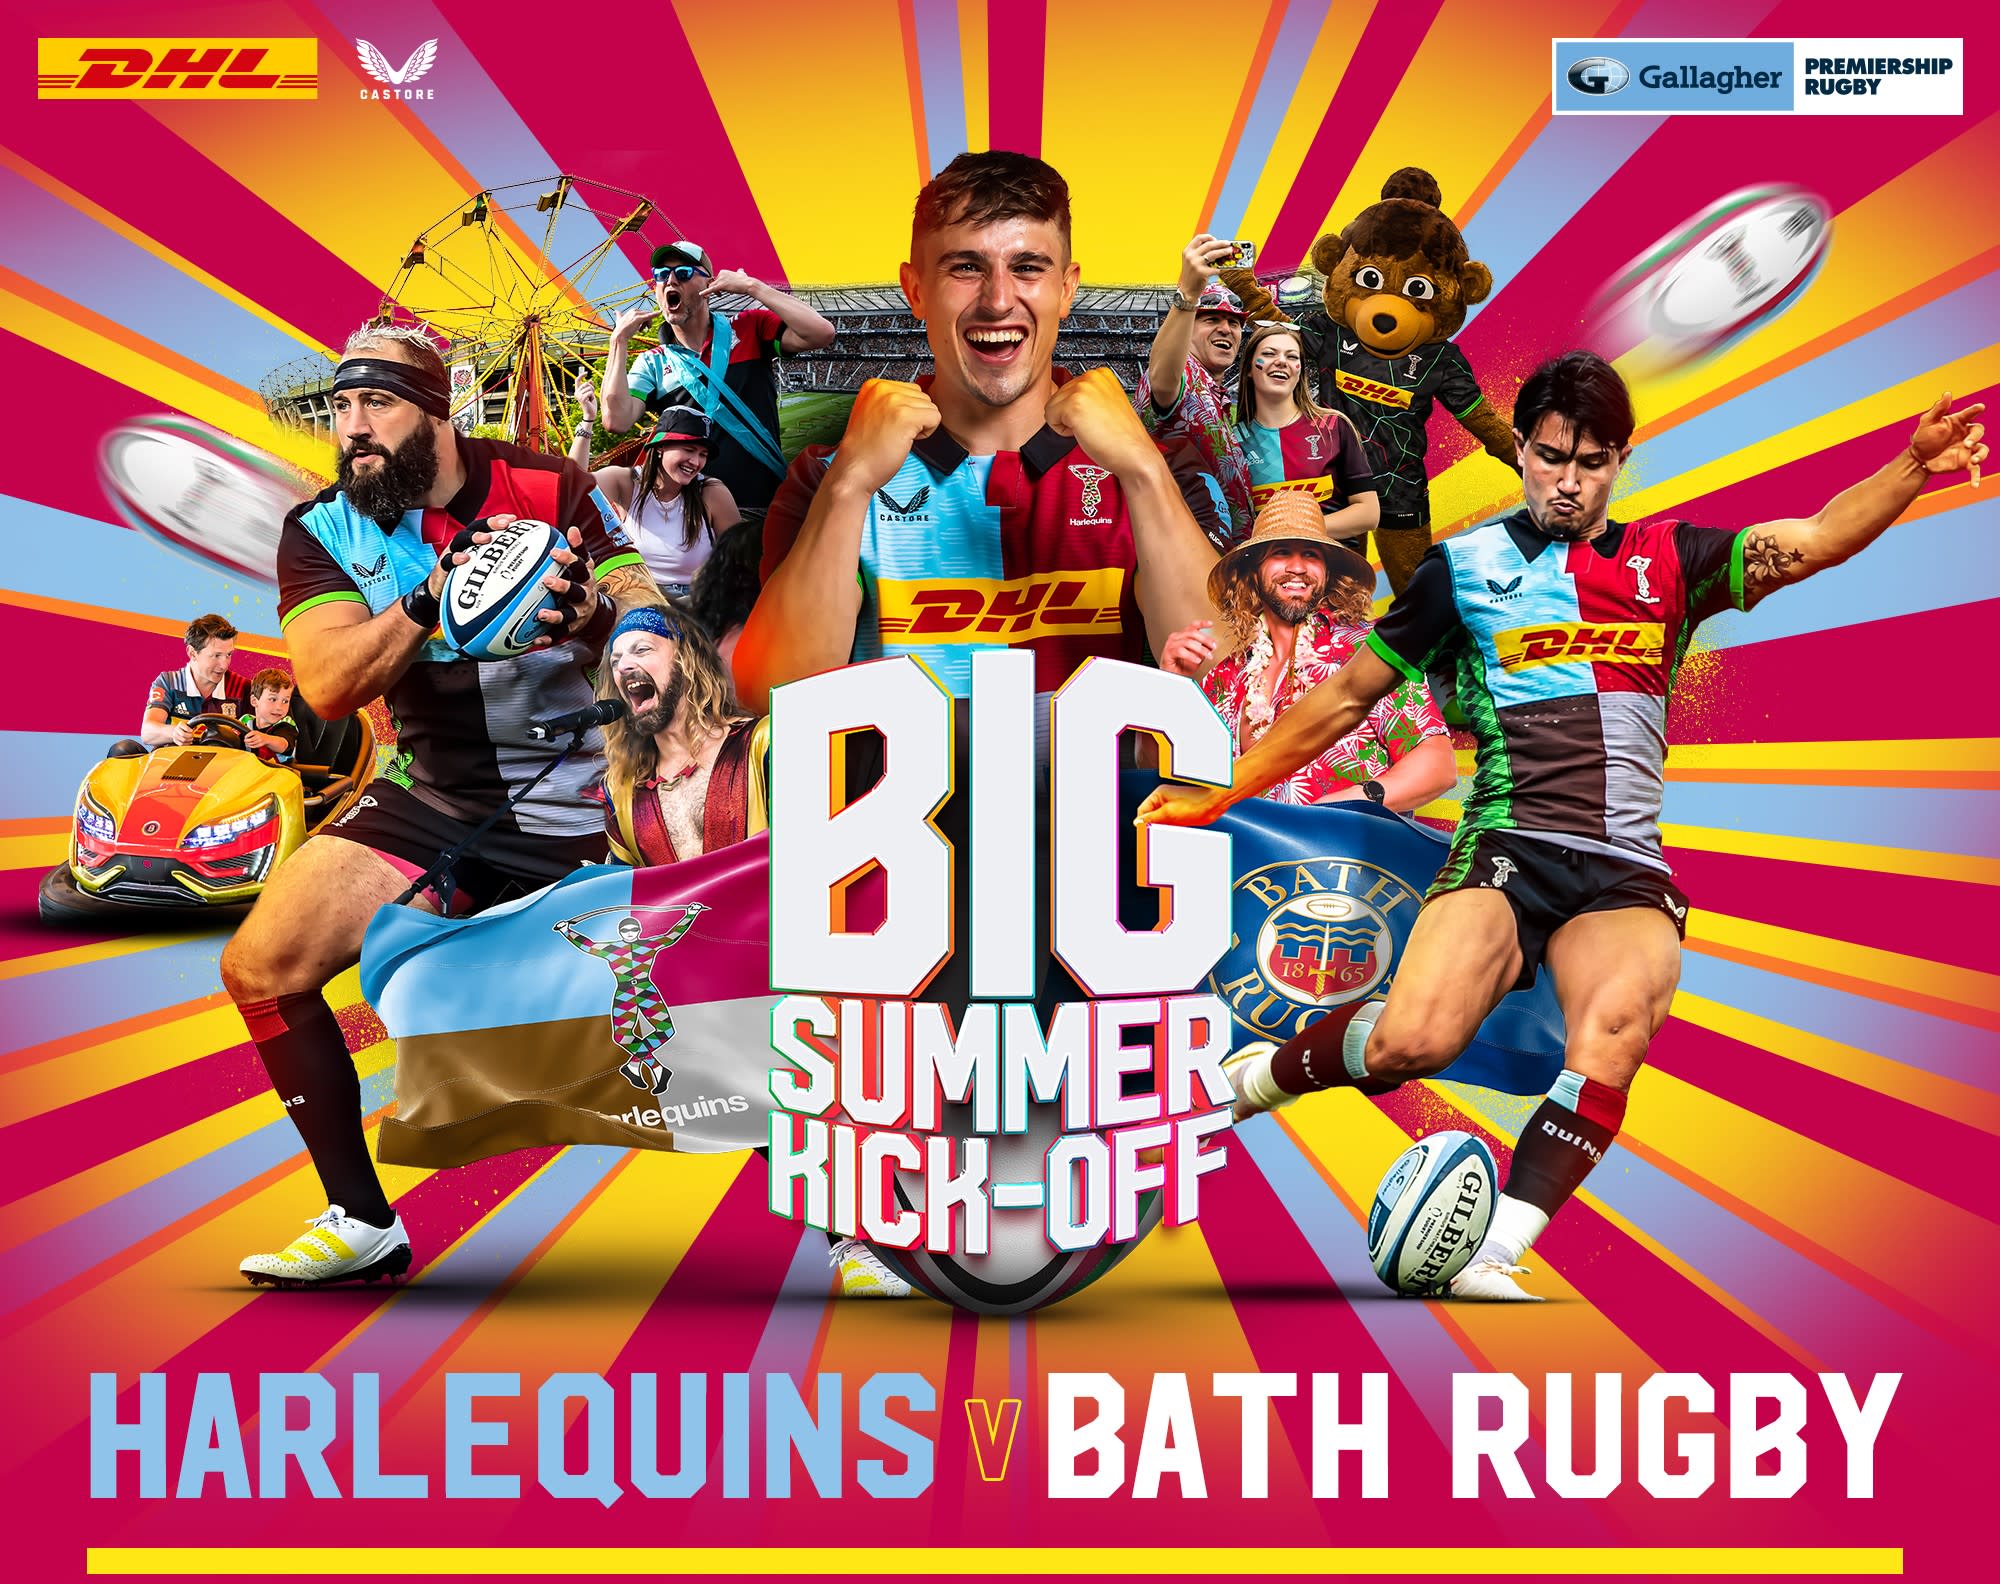 Harlequins v Bath Rugby Big Summer Kick Off.